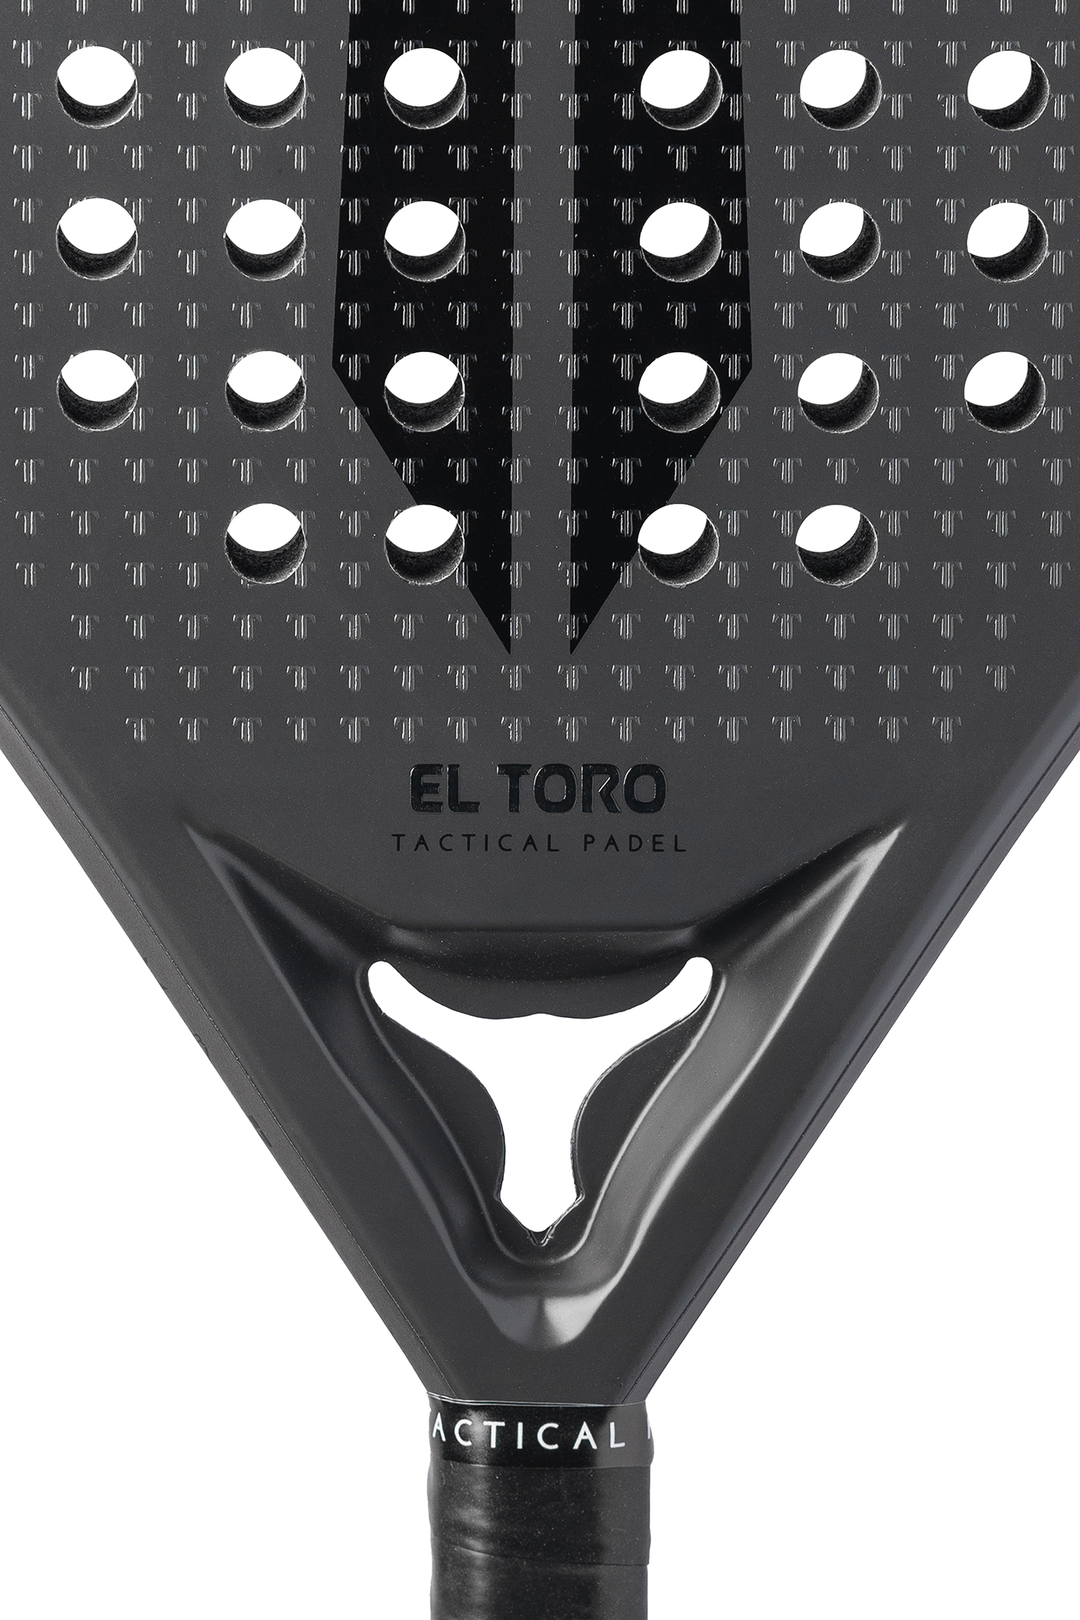 El Toro 2.0 - Vice Versa (Grey/Black)